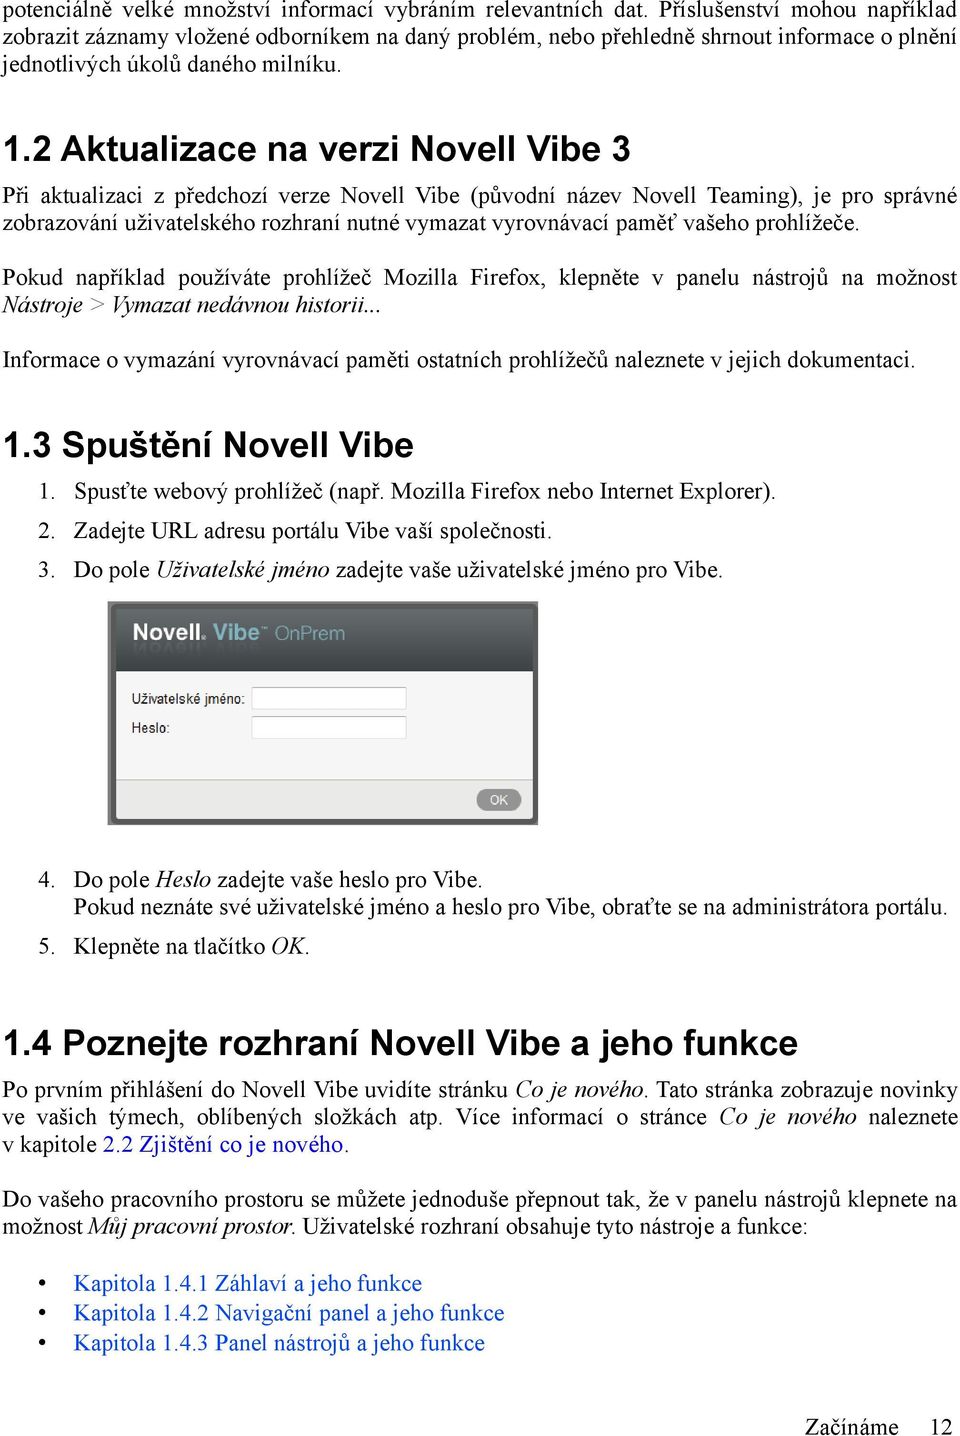 2 Aktualizace na verzi Novell Vibe 3 Při aktualizaci z předchozí verze Novell Vibe (původní název Novell Teaming), je pro správné zobrazování uživatelského rozhraní nutné vymazat vyrovnávací paměť